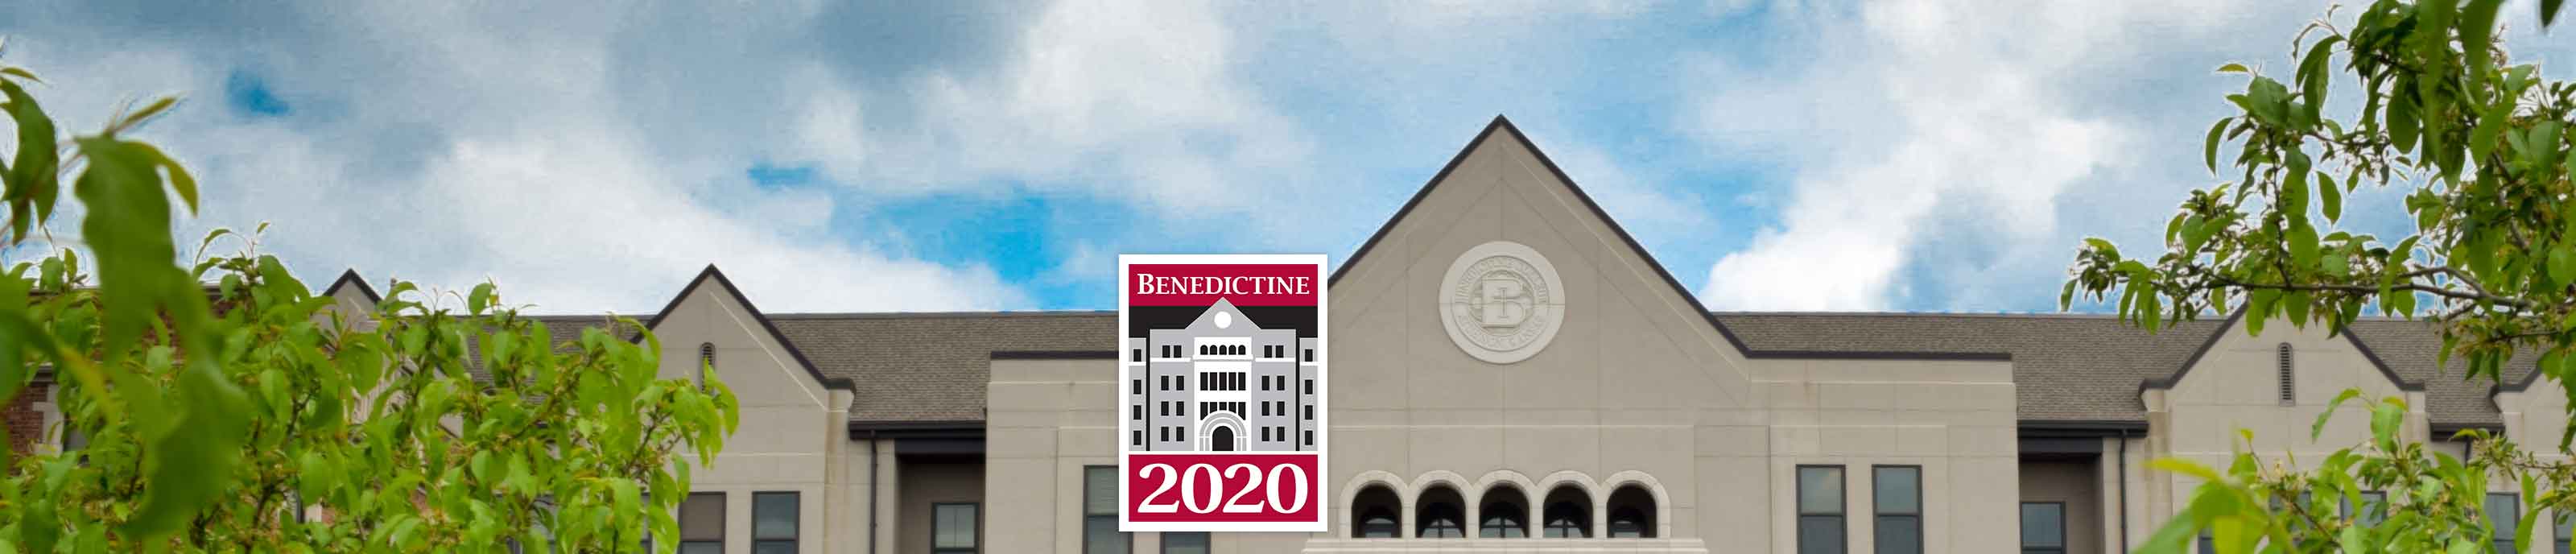 Benedictine 2020